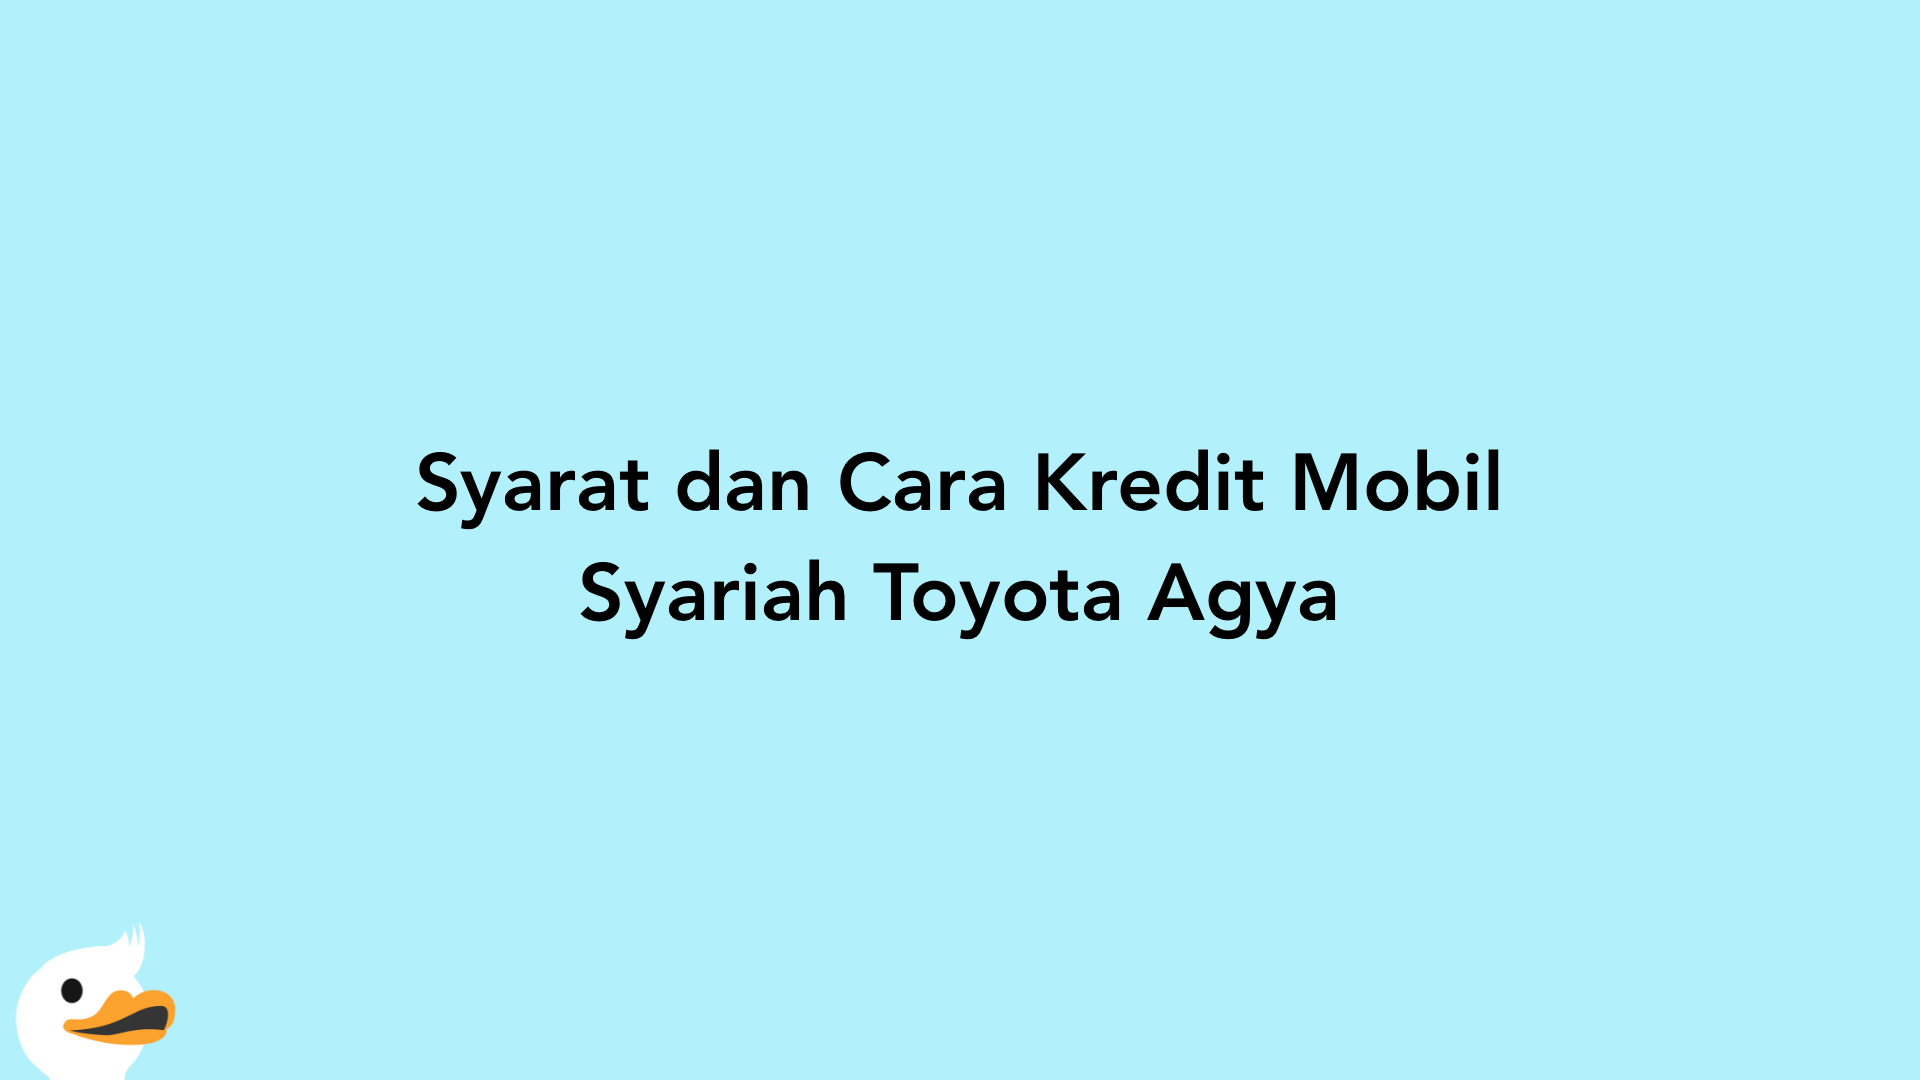 Syarat dan Cara Kredit Mobil Syariah Toyota Agya